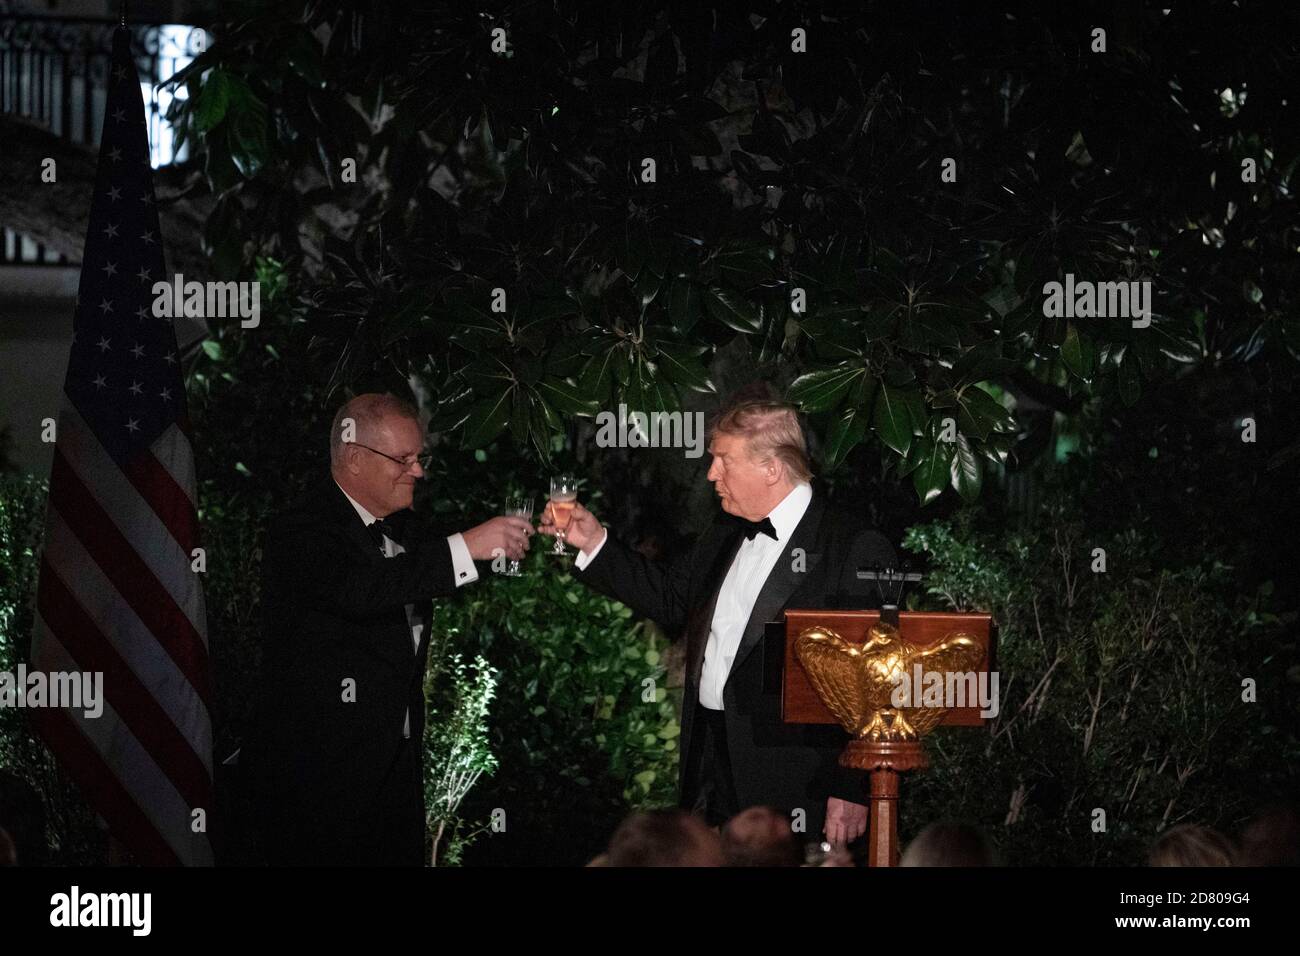 Le président américain Donald Trump et le premier ministre australien Scott Morrison ont fêté leur toast lors d'une visite d'État à la Maison Blanche le 9 septembre 2019 à Washington, D.C. Credit: Alex Edelman/The photo Access Banque D'Images